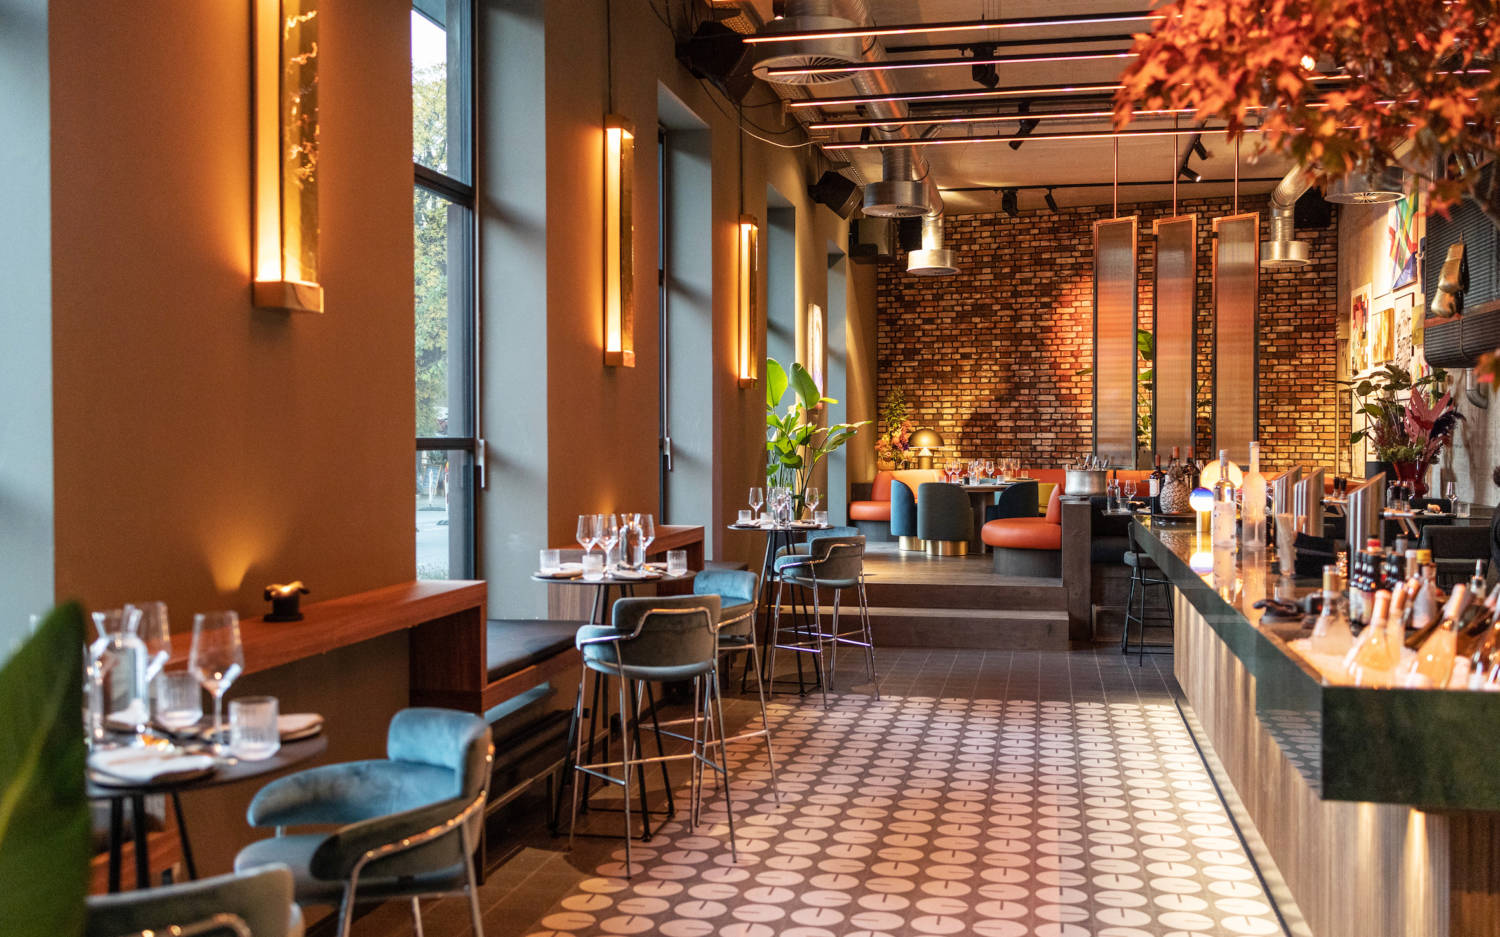 Ein neuer Hotspot in Ottensen: Der Player vereint Bar, Club und Edel-Restaurant in Einem / ©Nicole Malonnek